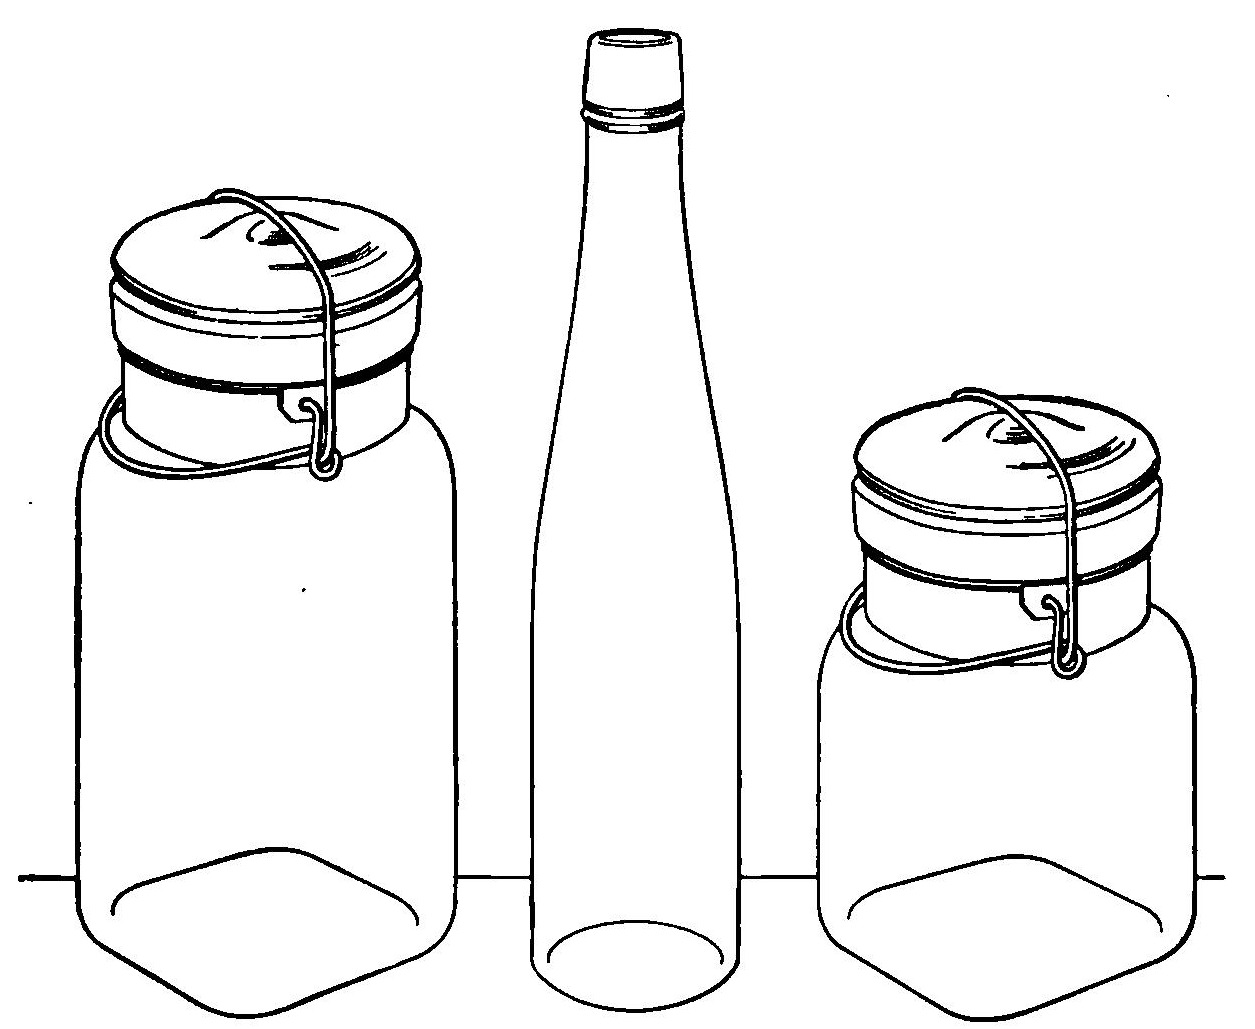 bottle clipart jar